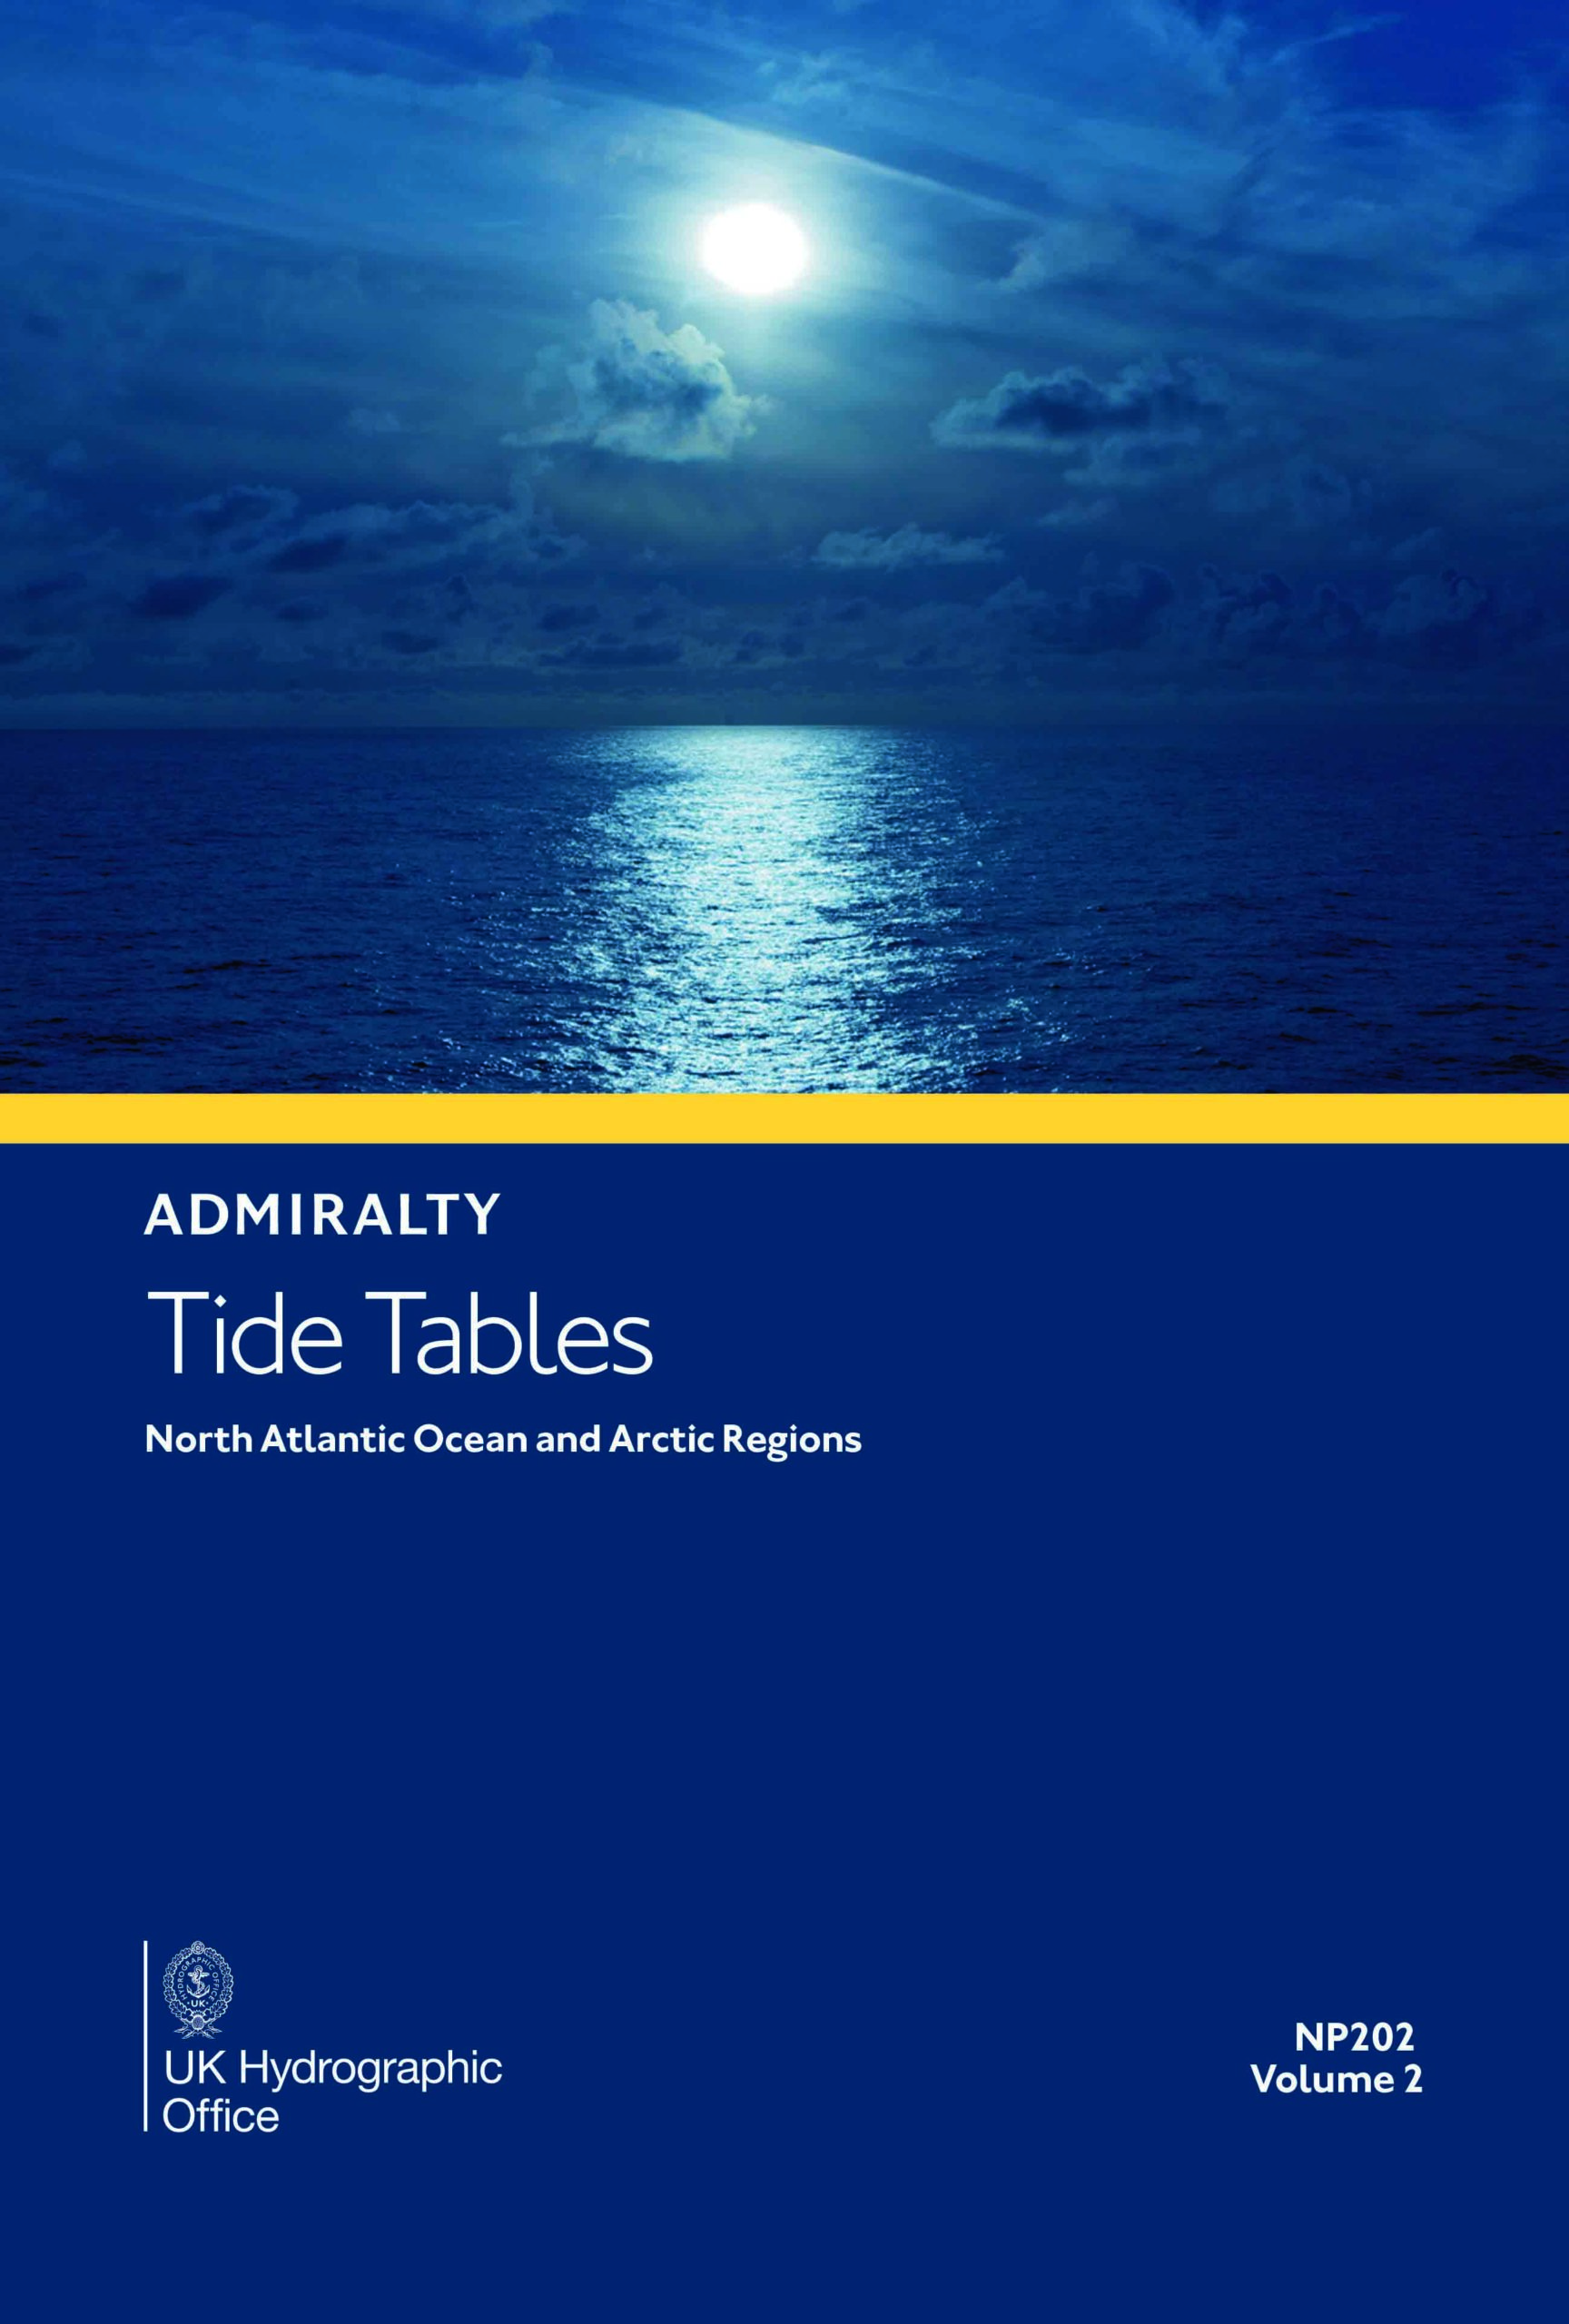 NP202 Tide Tables Vol. 2 2025